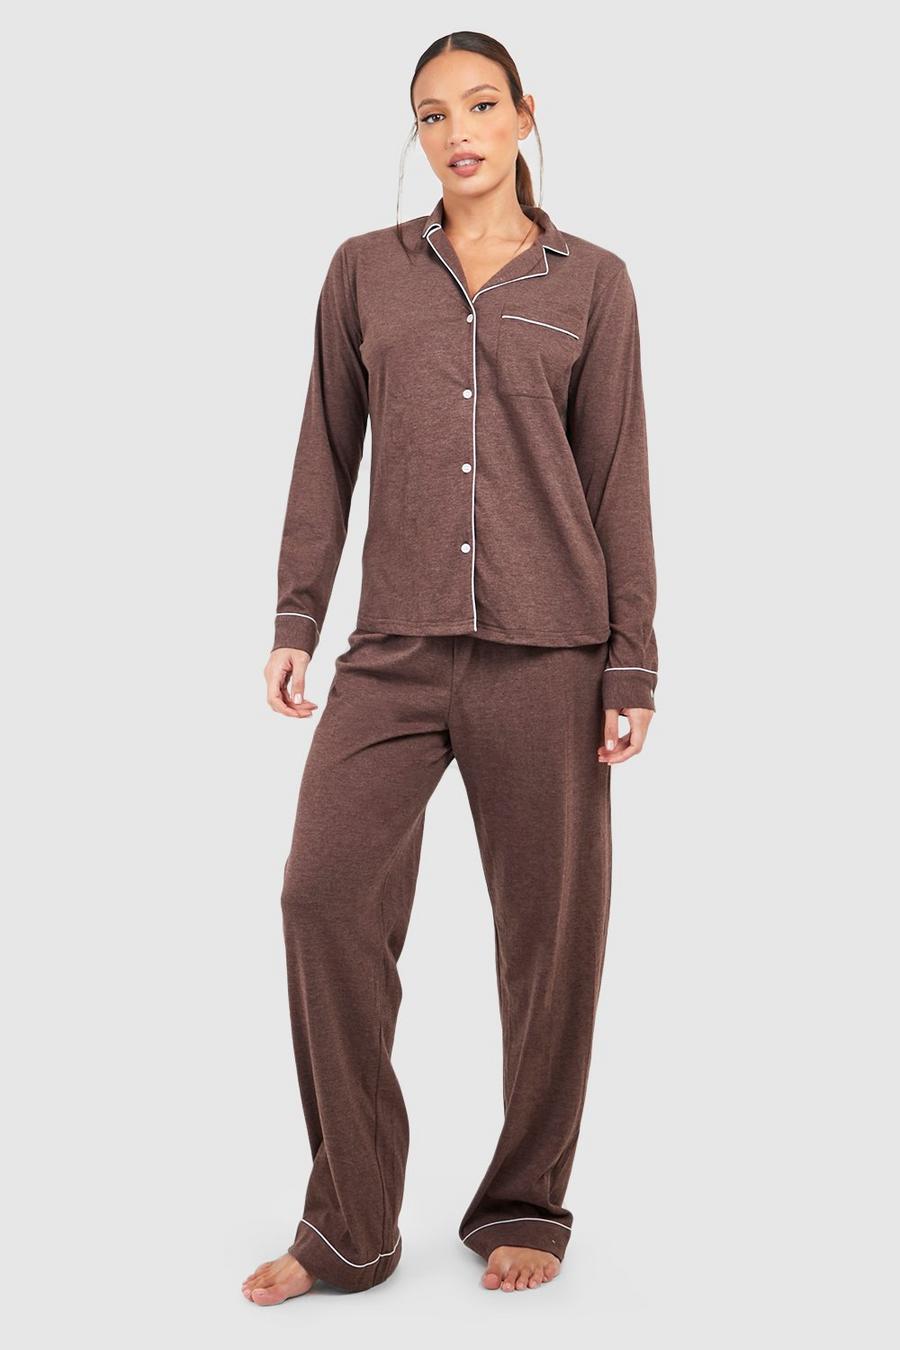 Tall langärmliger Jersey-Pyjama mit Knöpfen, Chocolate